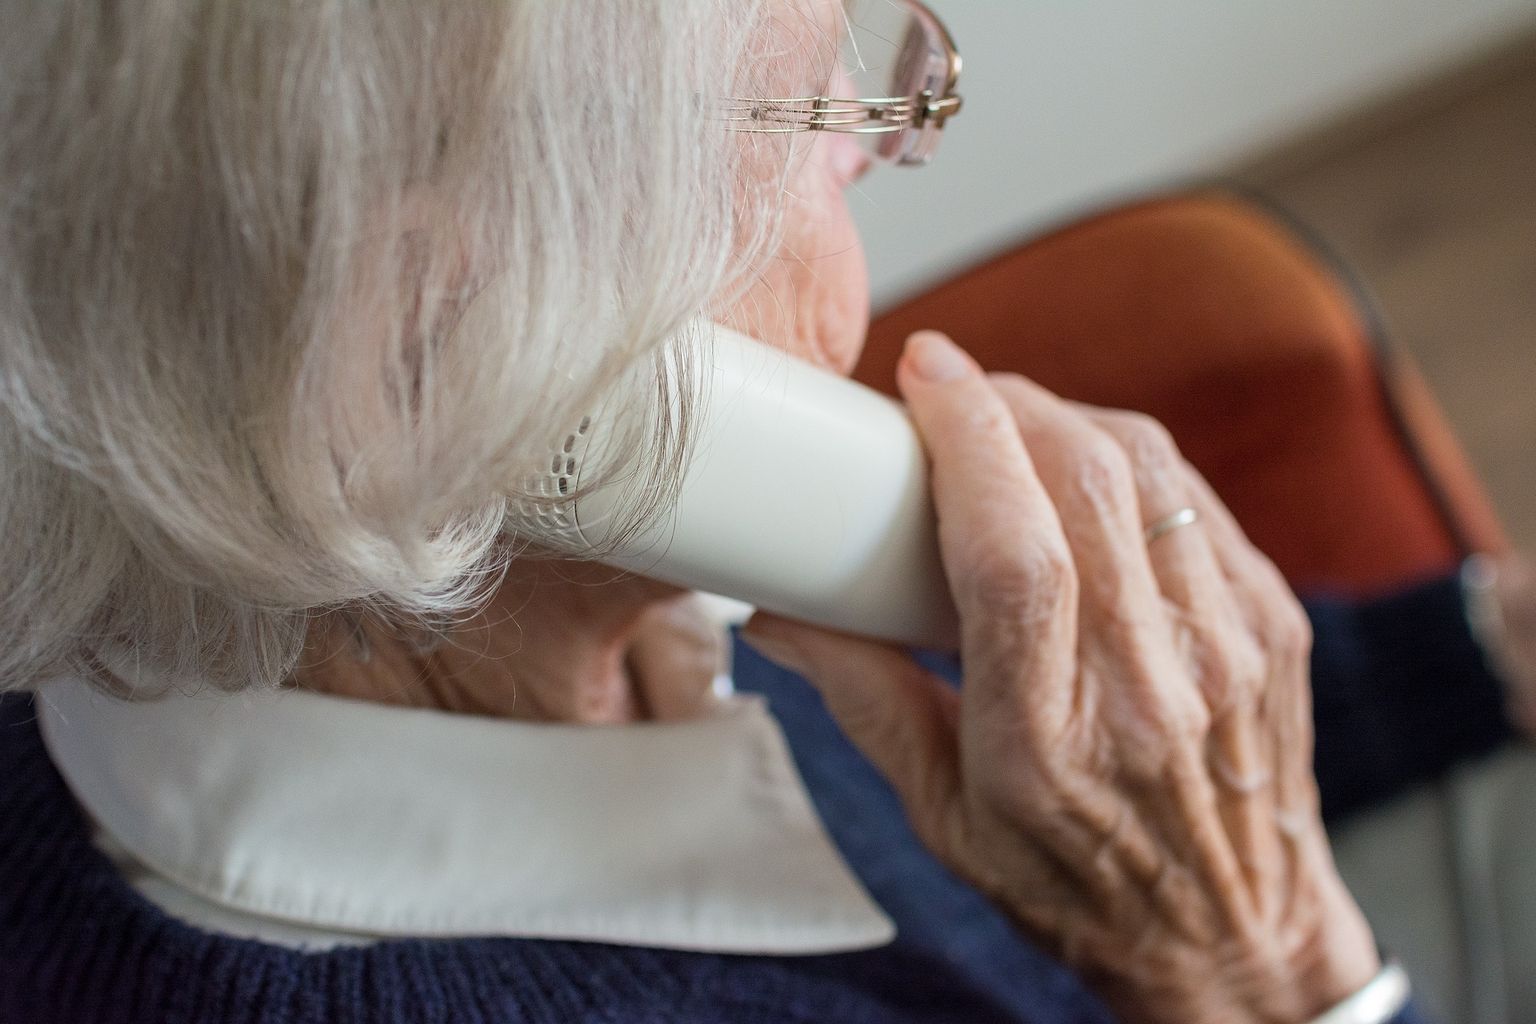 Üksindust näitab ka see, kui eakad hakkavad pidevalt perearstile helistama ja iga nädal nõudma uuringuid. Tegelikult soovivad nad lihtsalt inimlikku kontakti.